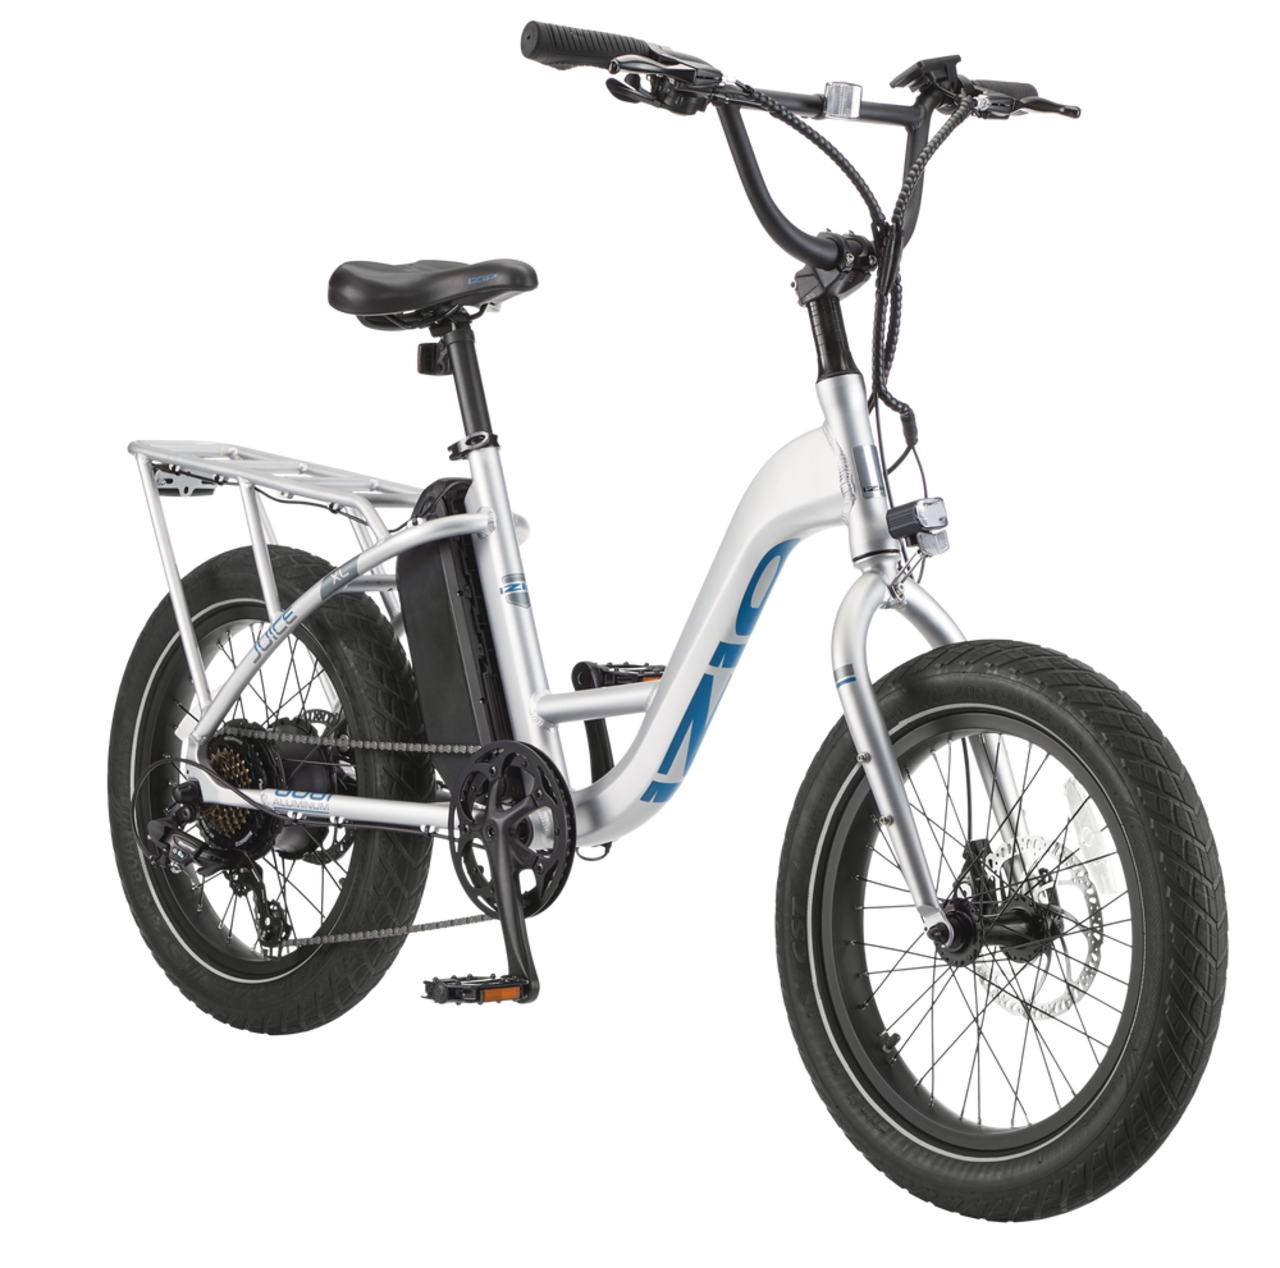 Vélo électrique iZip XL pour adultes, cadre en aluminium, 20 po, gris